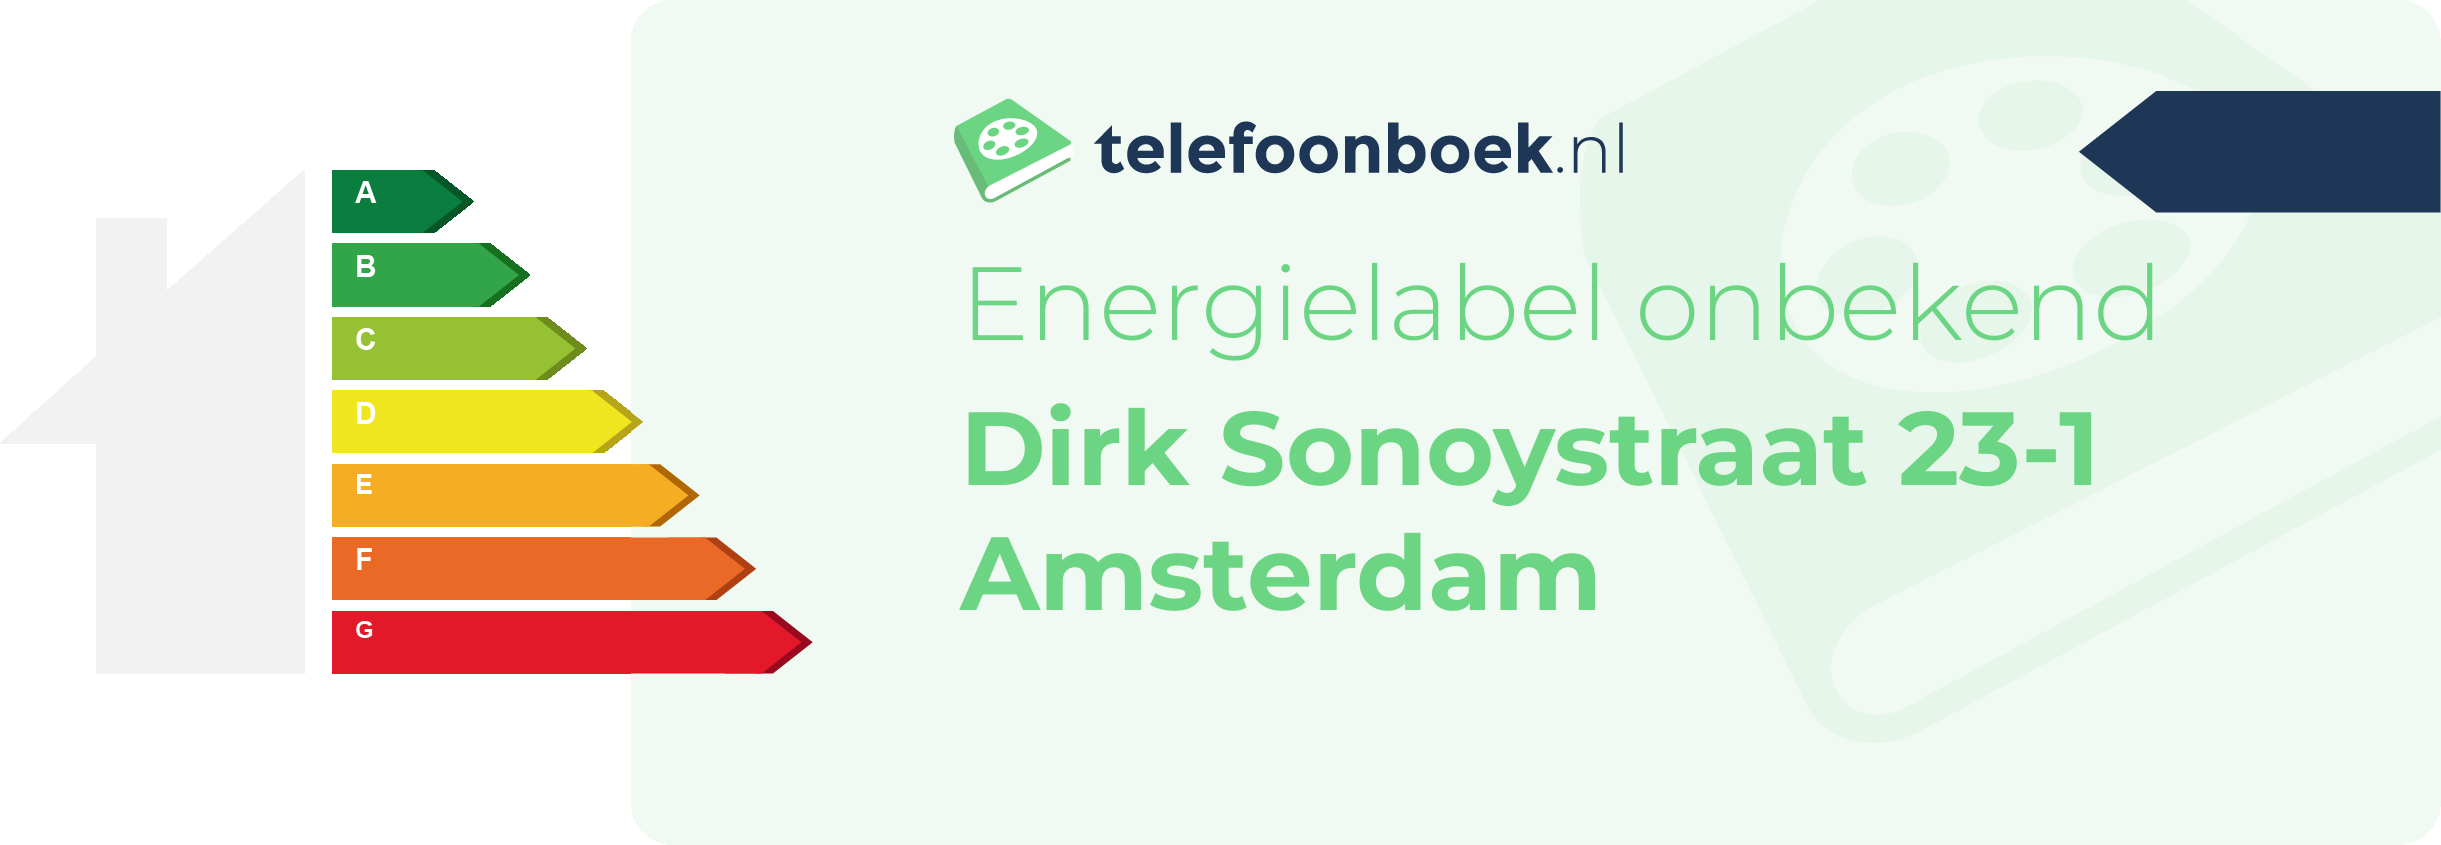 Energielabel Dirk Sonoystraat 23-1 Amsterdam